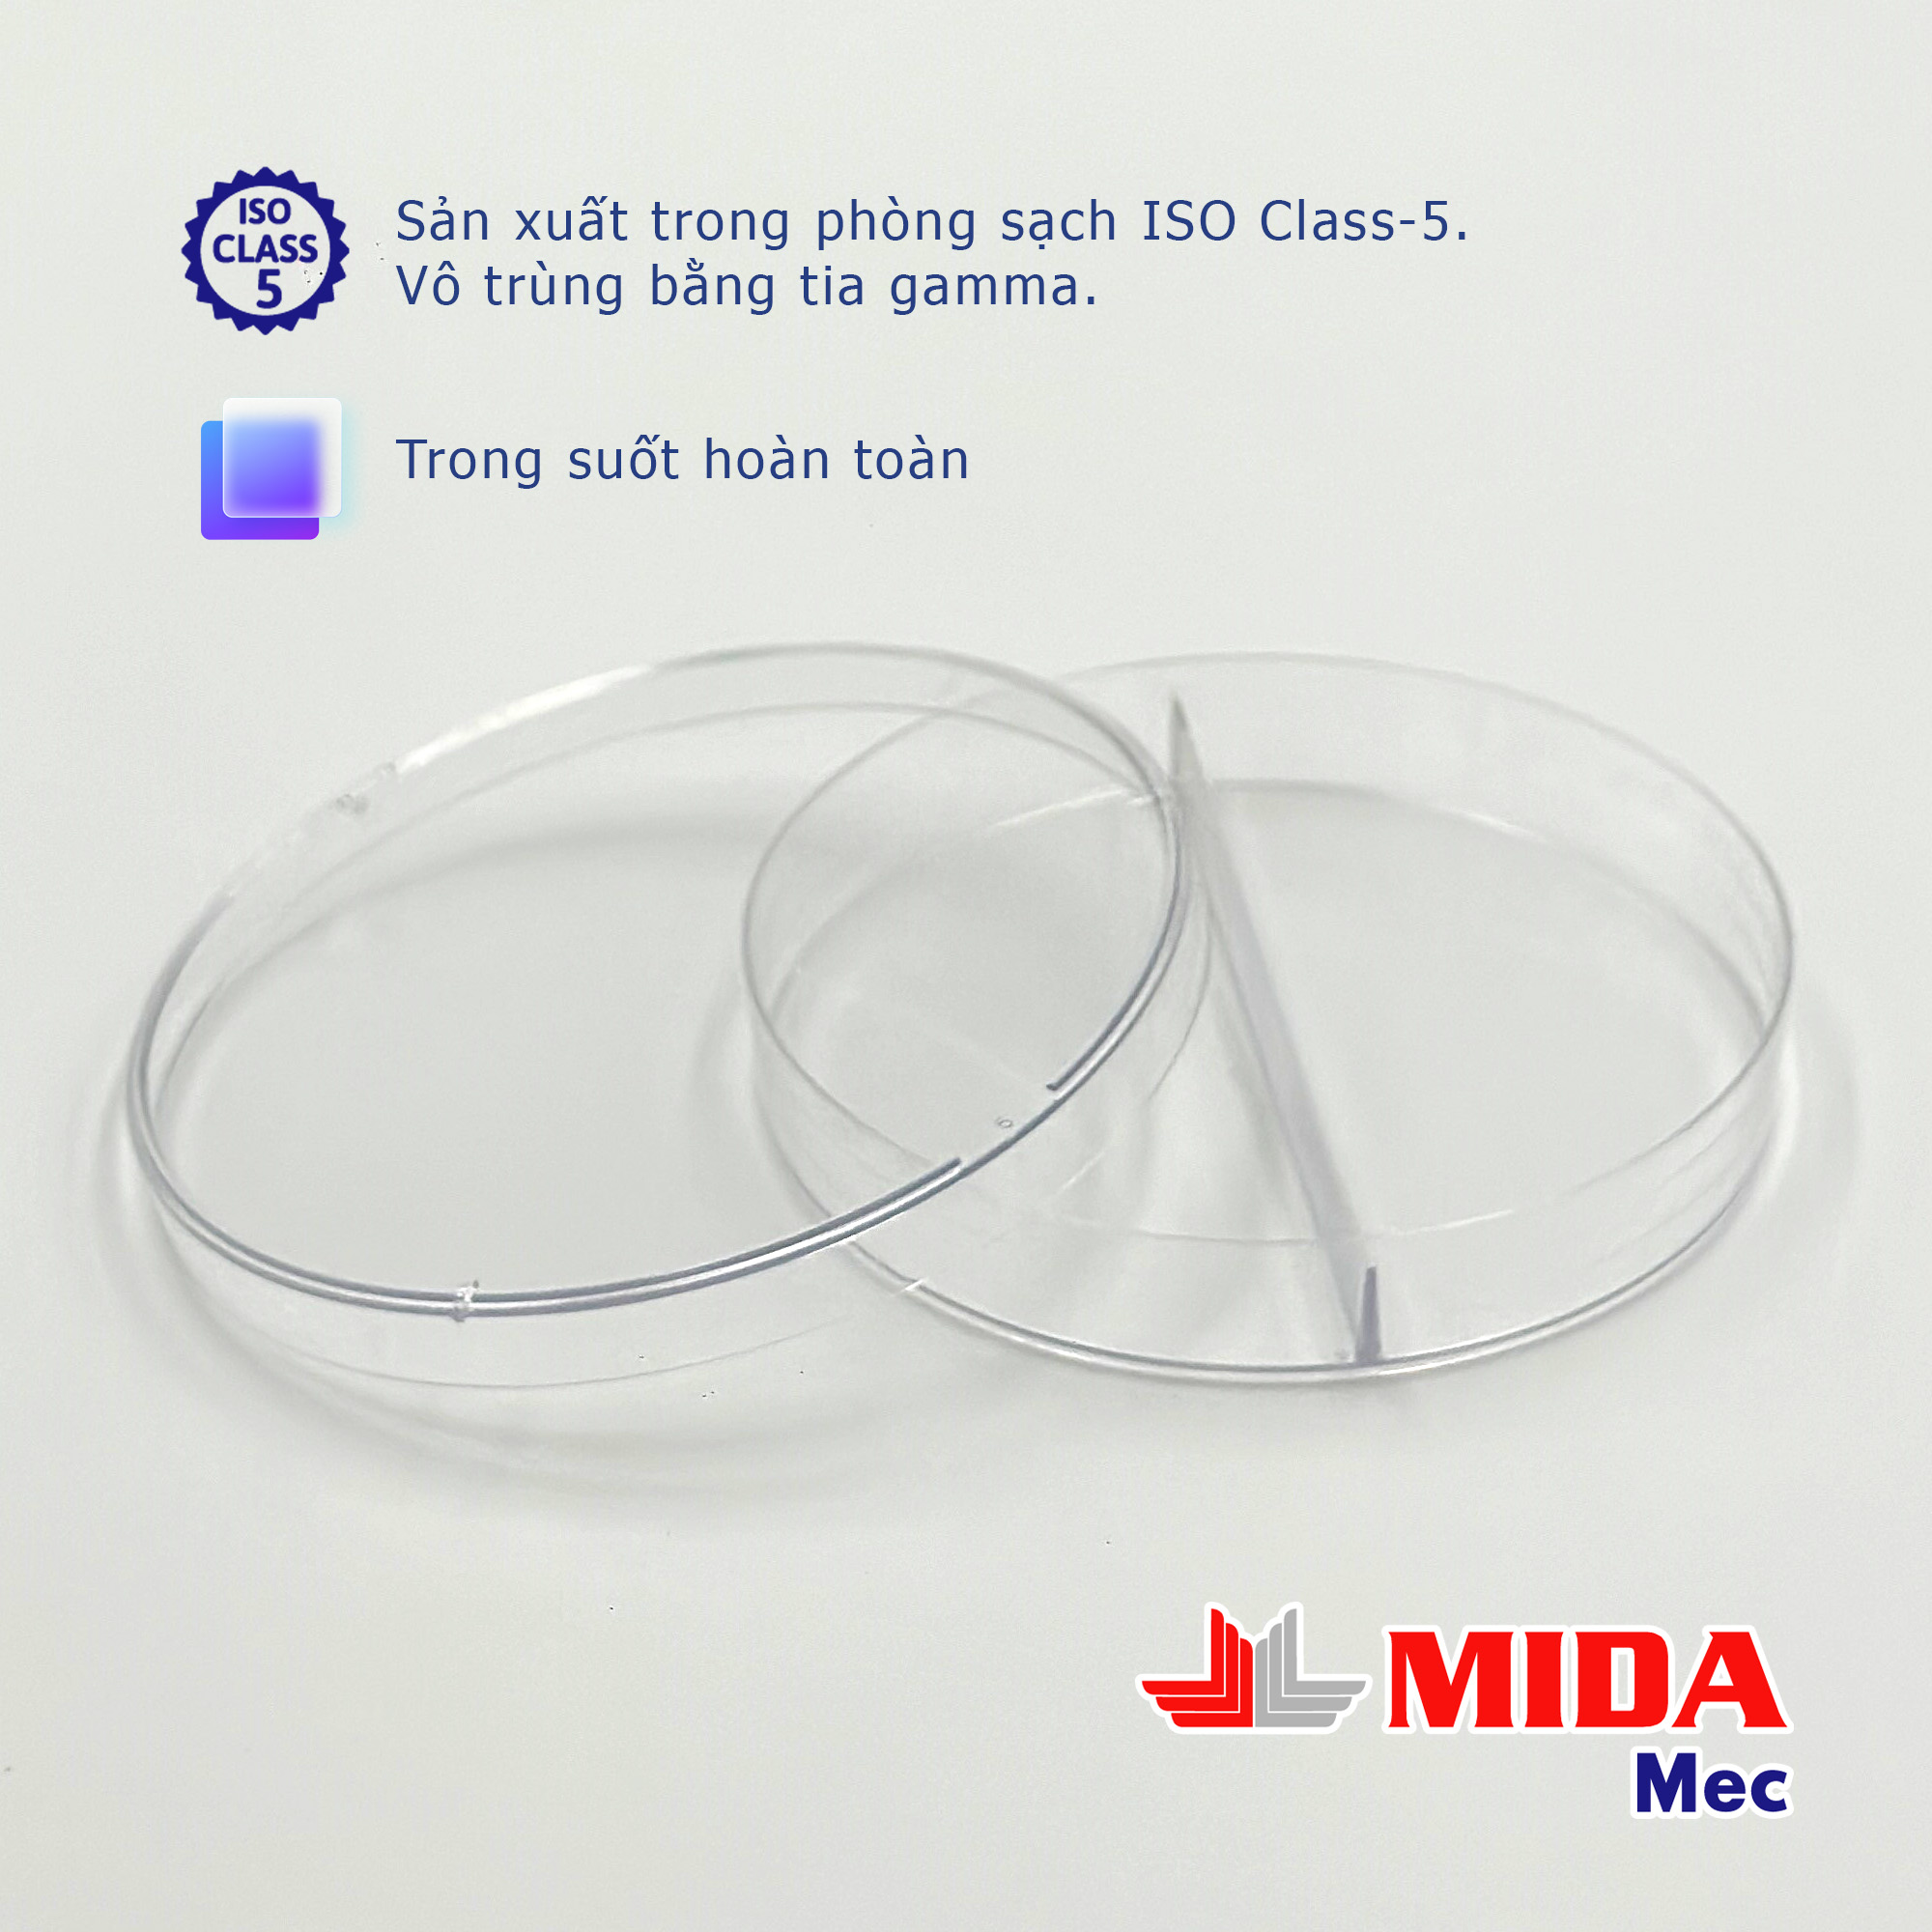 Đĩa Petri nhựa MidaMec 9015 - 2 ngăn đã tiệt trùng đóng gói 20 cái/ bao